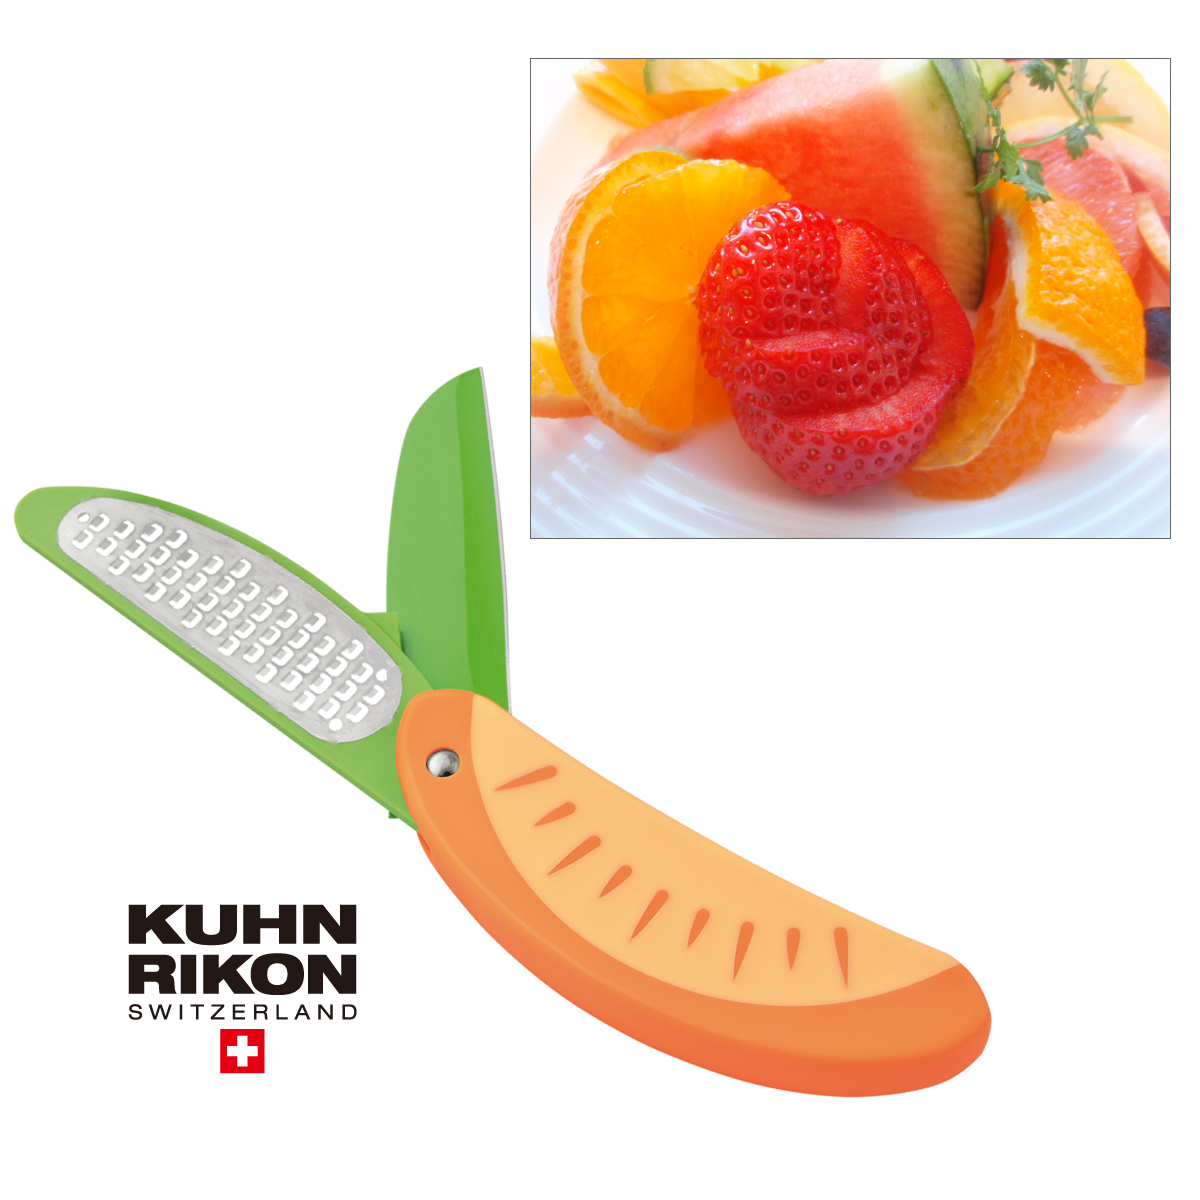 【P10倍♪店内最大20倍】Kuhn Rikon クーン リコン Citrus Knife Orange シトラスナイフ オレンジ 在庫限り画像